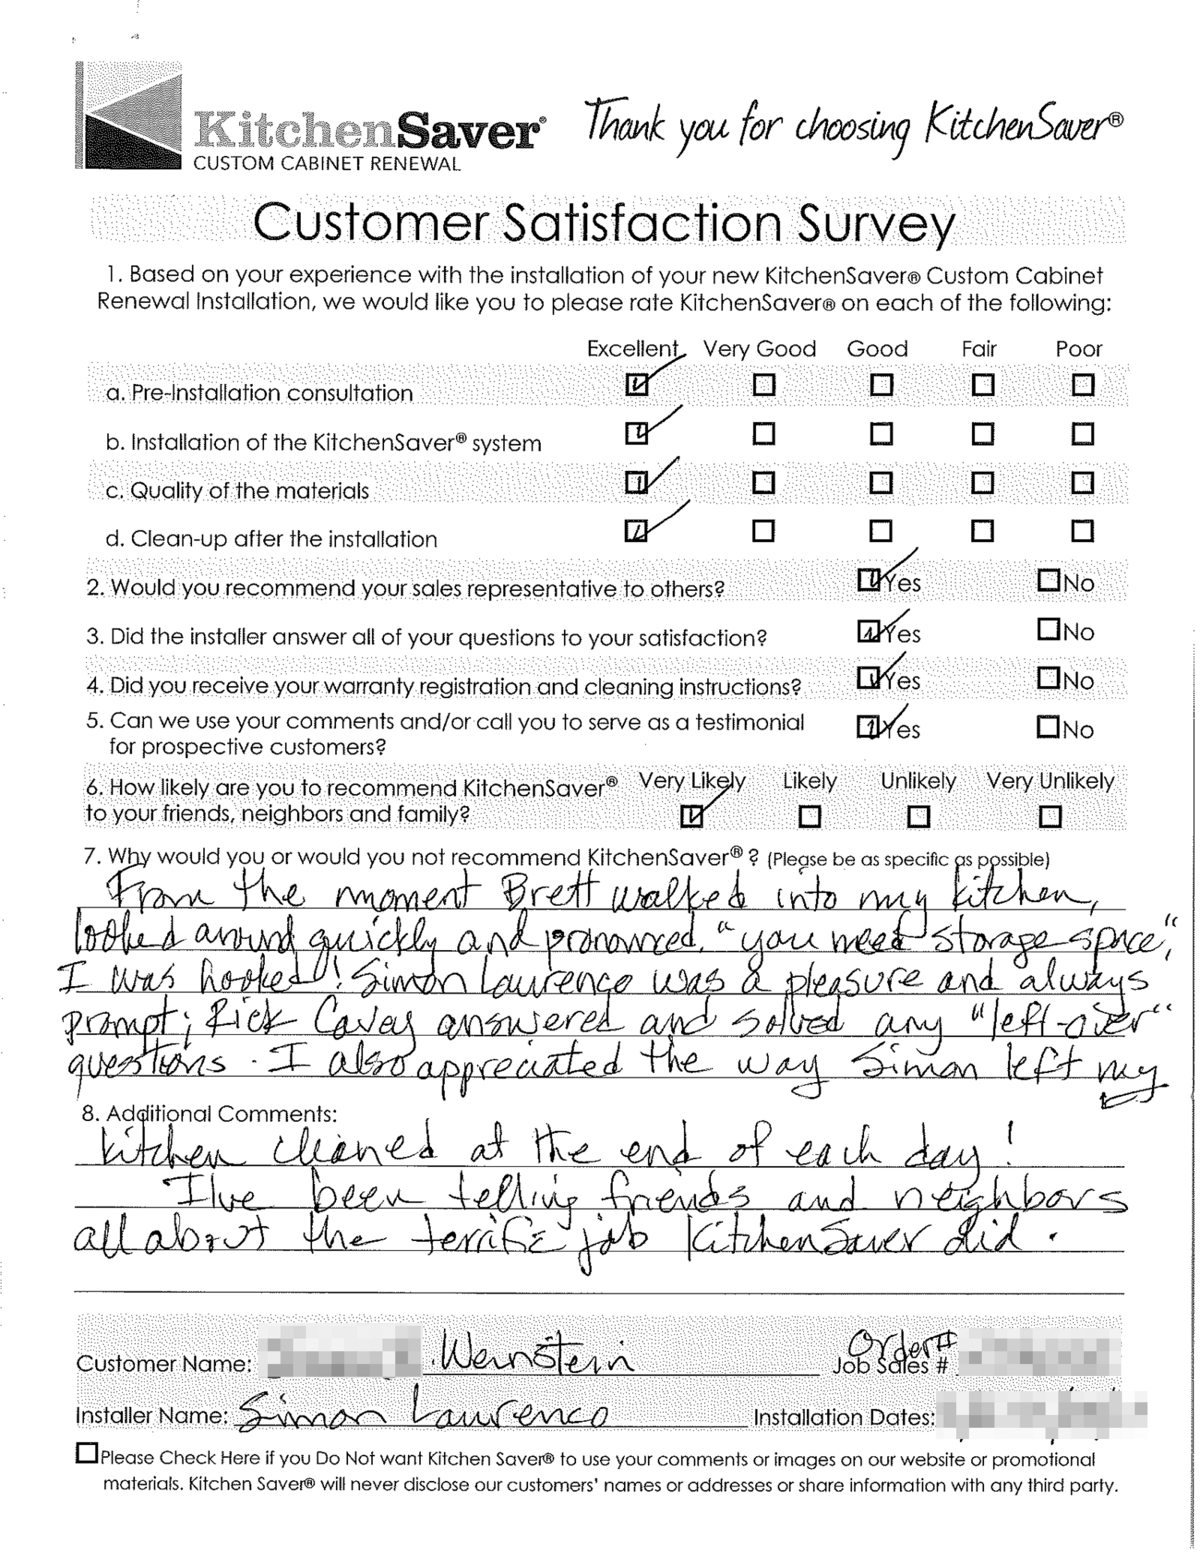  Weinstein Satisfaction Survey